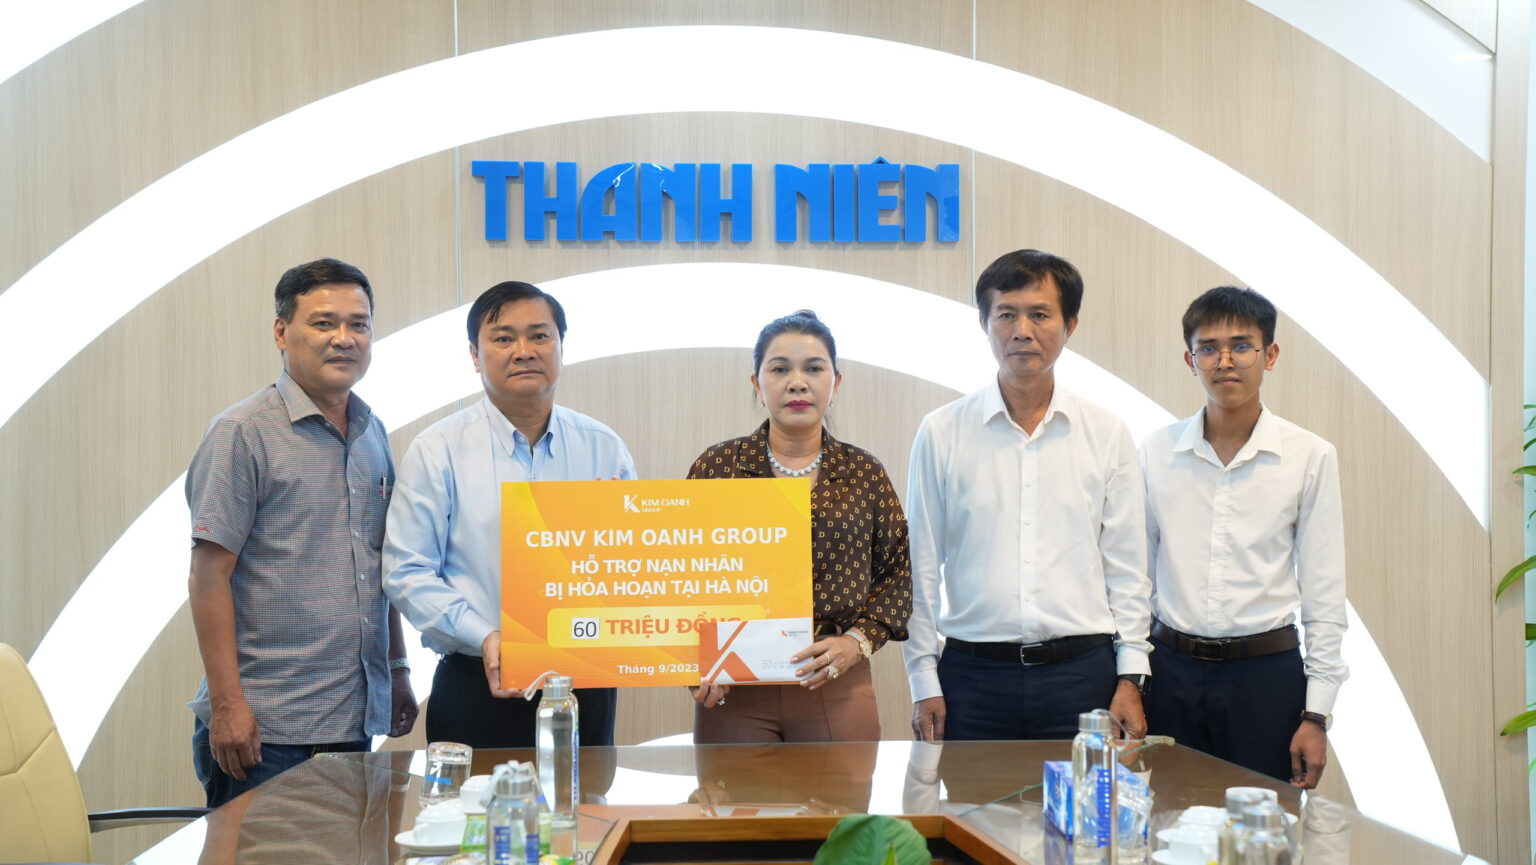 Tổng biên tập báo Thanh Niên tiếp nhận bảng tượng trưng 60 triệu đồng từ Quỹ Từ thiện Kim Oanh